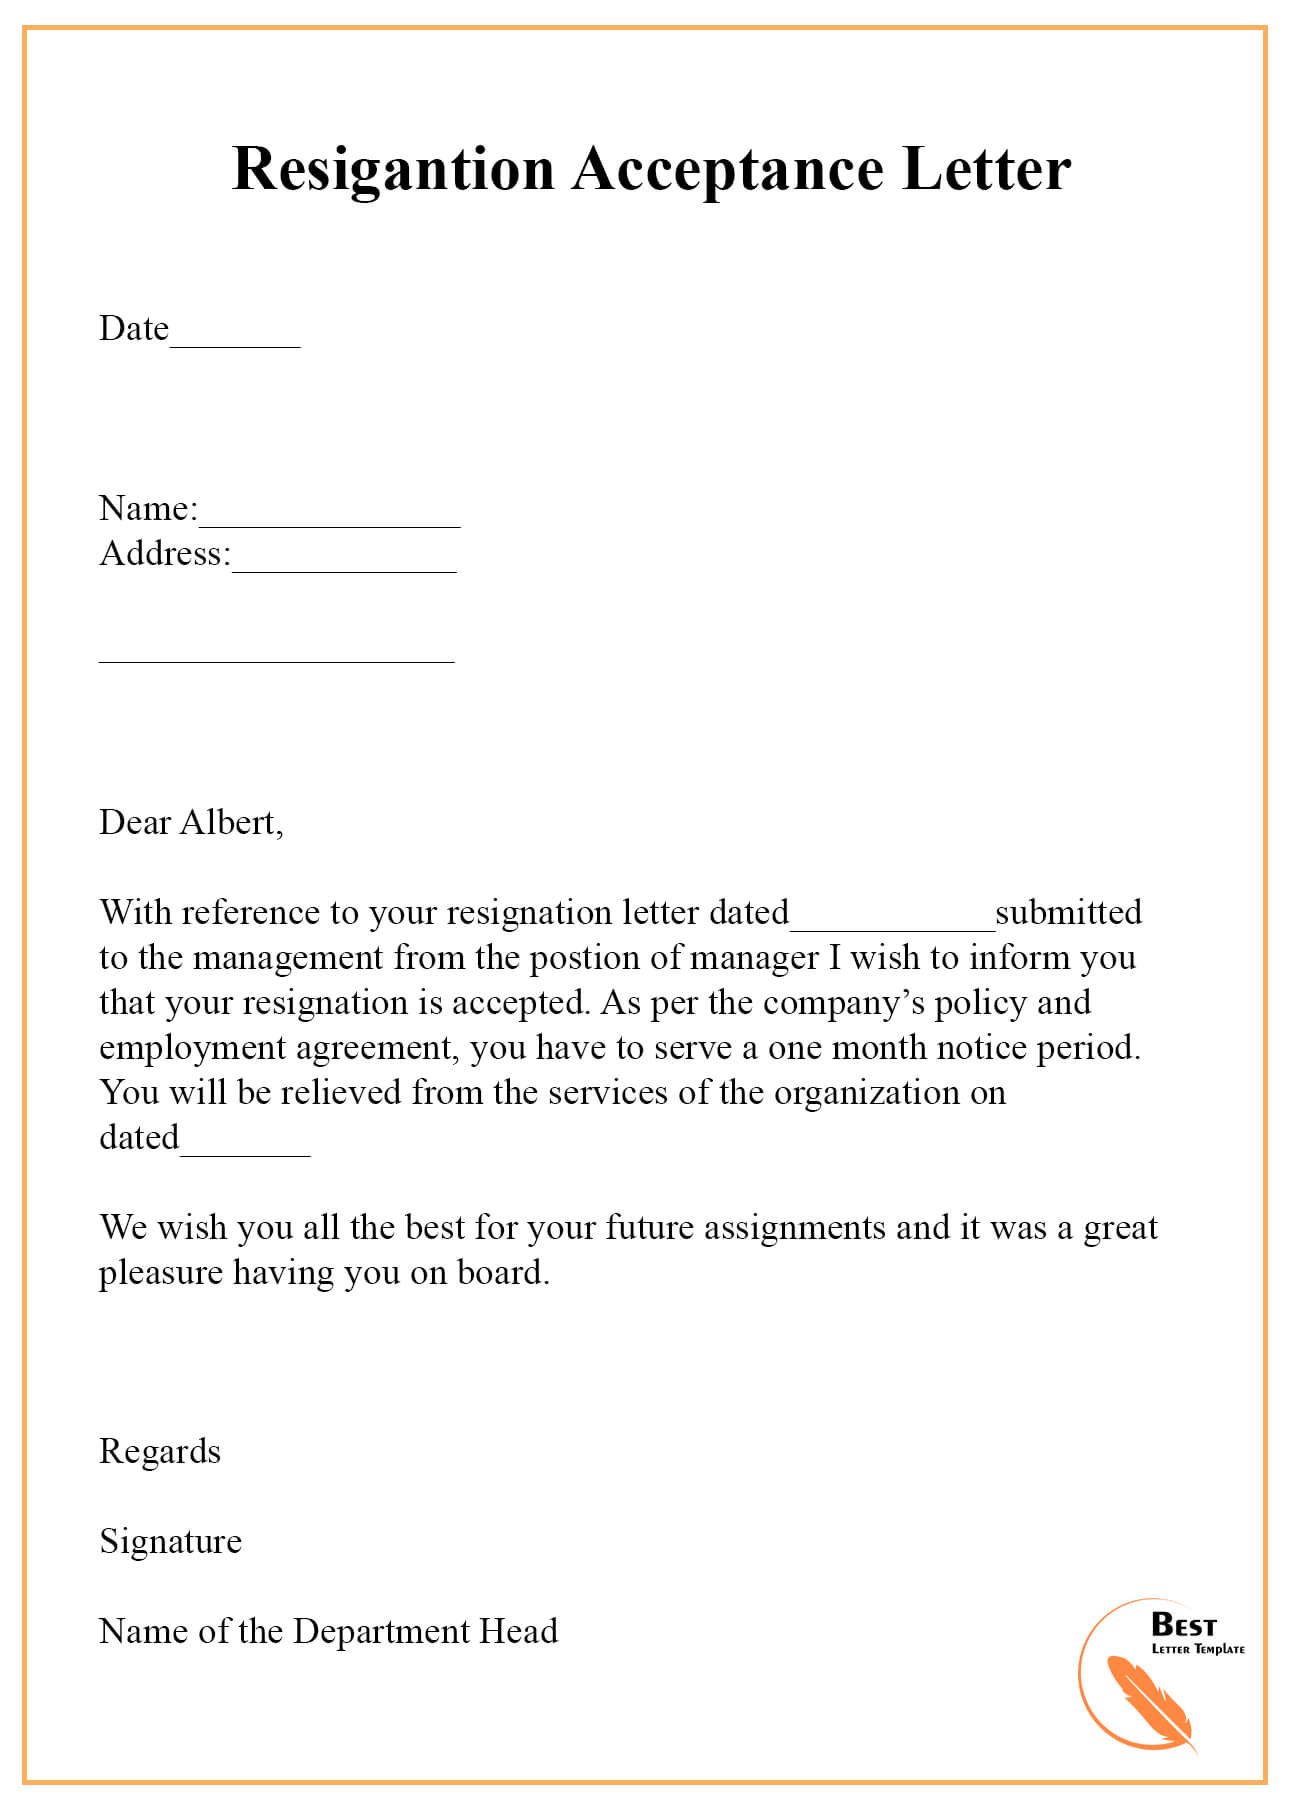 letter of resignation sample